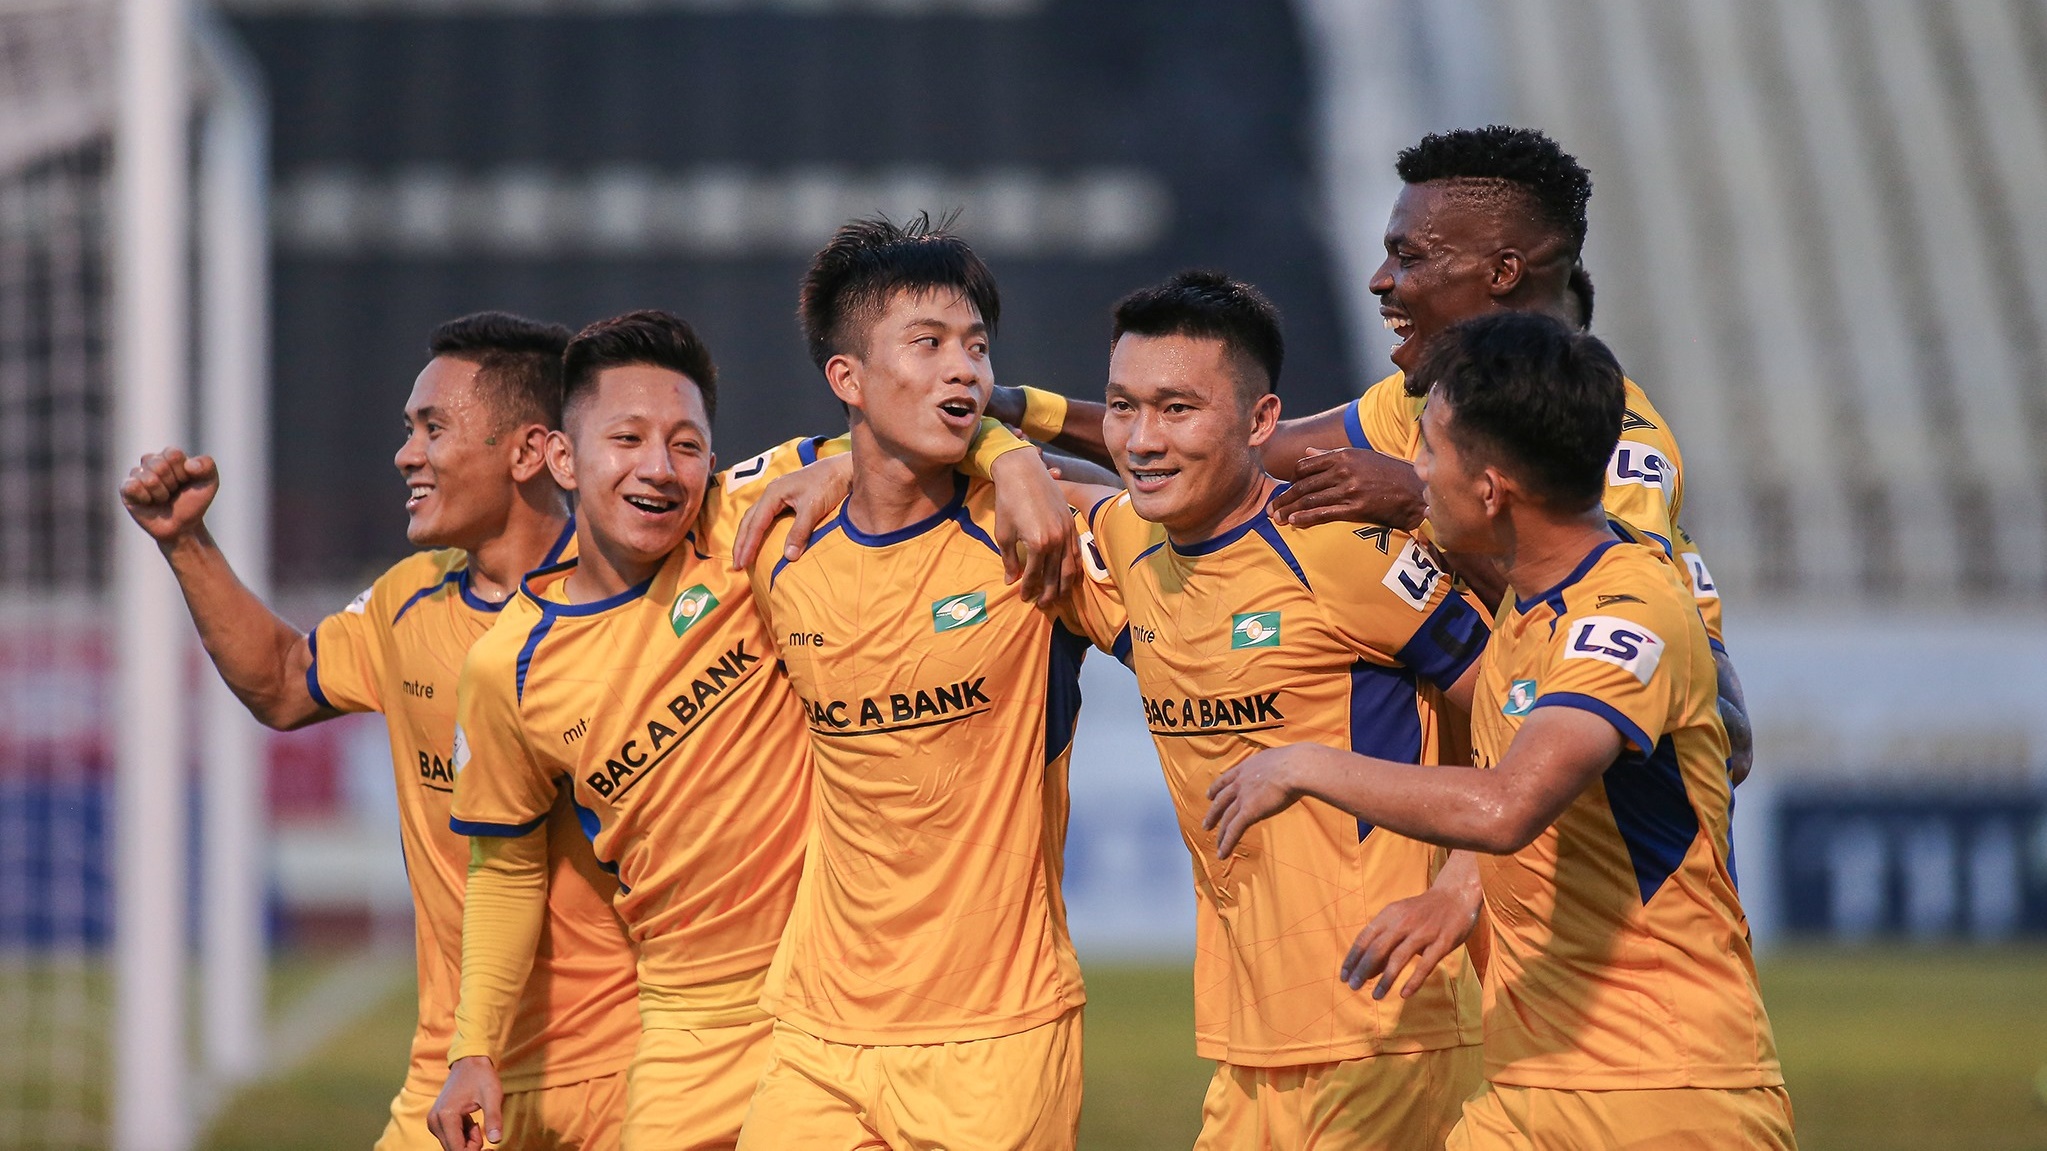 Câu lạc bộ Sông Lam Nghệ An thành công giữ chân cầu thủ